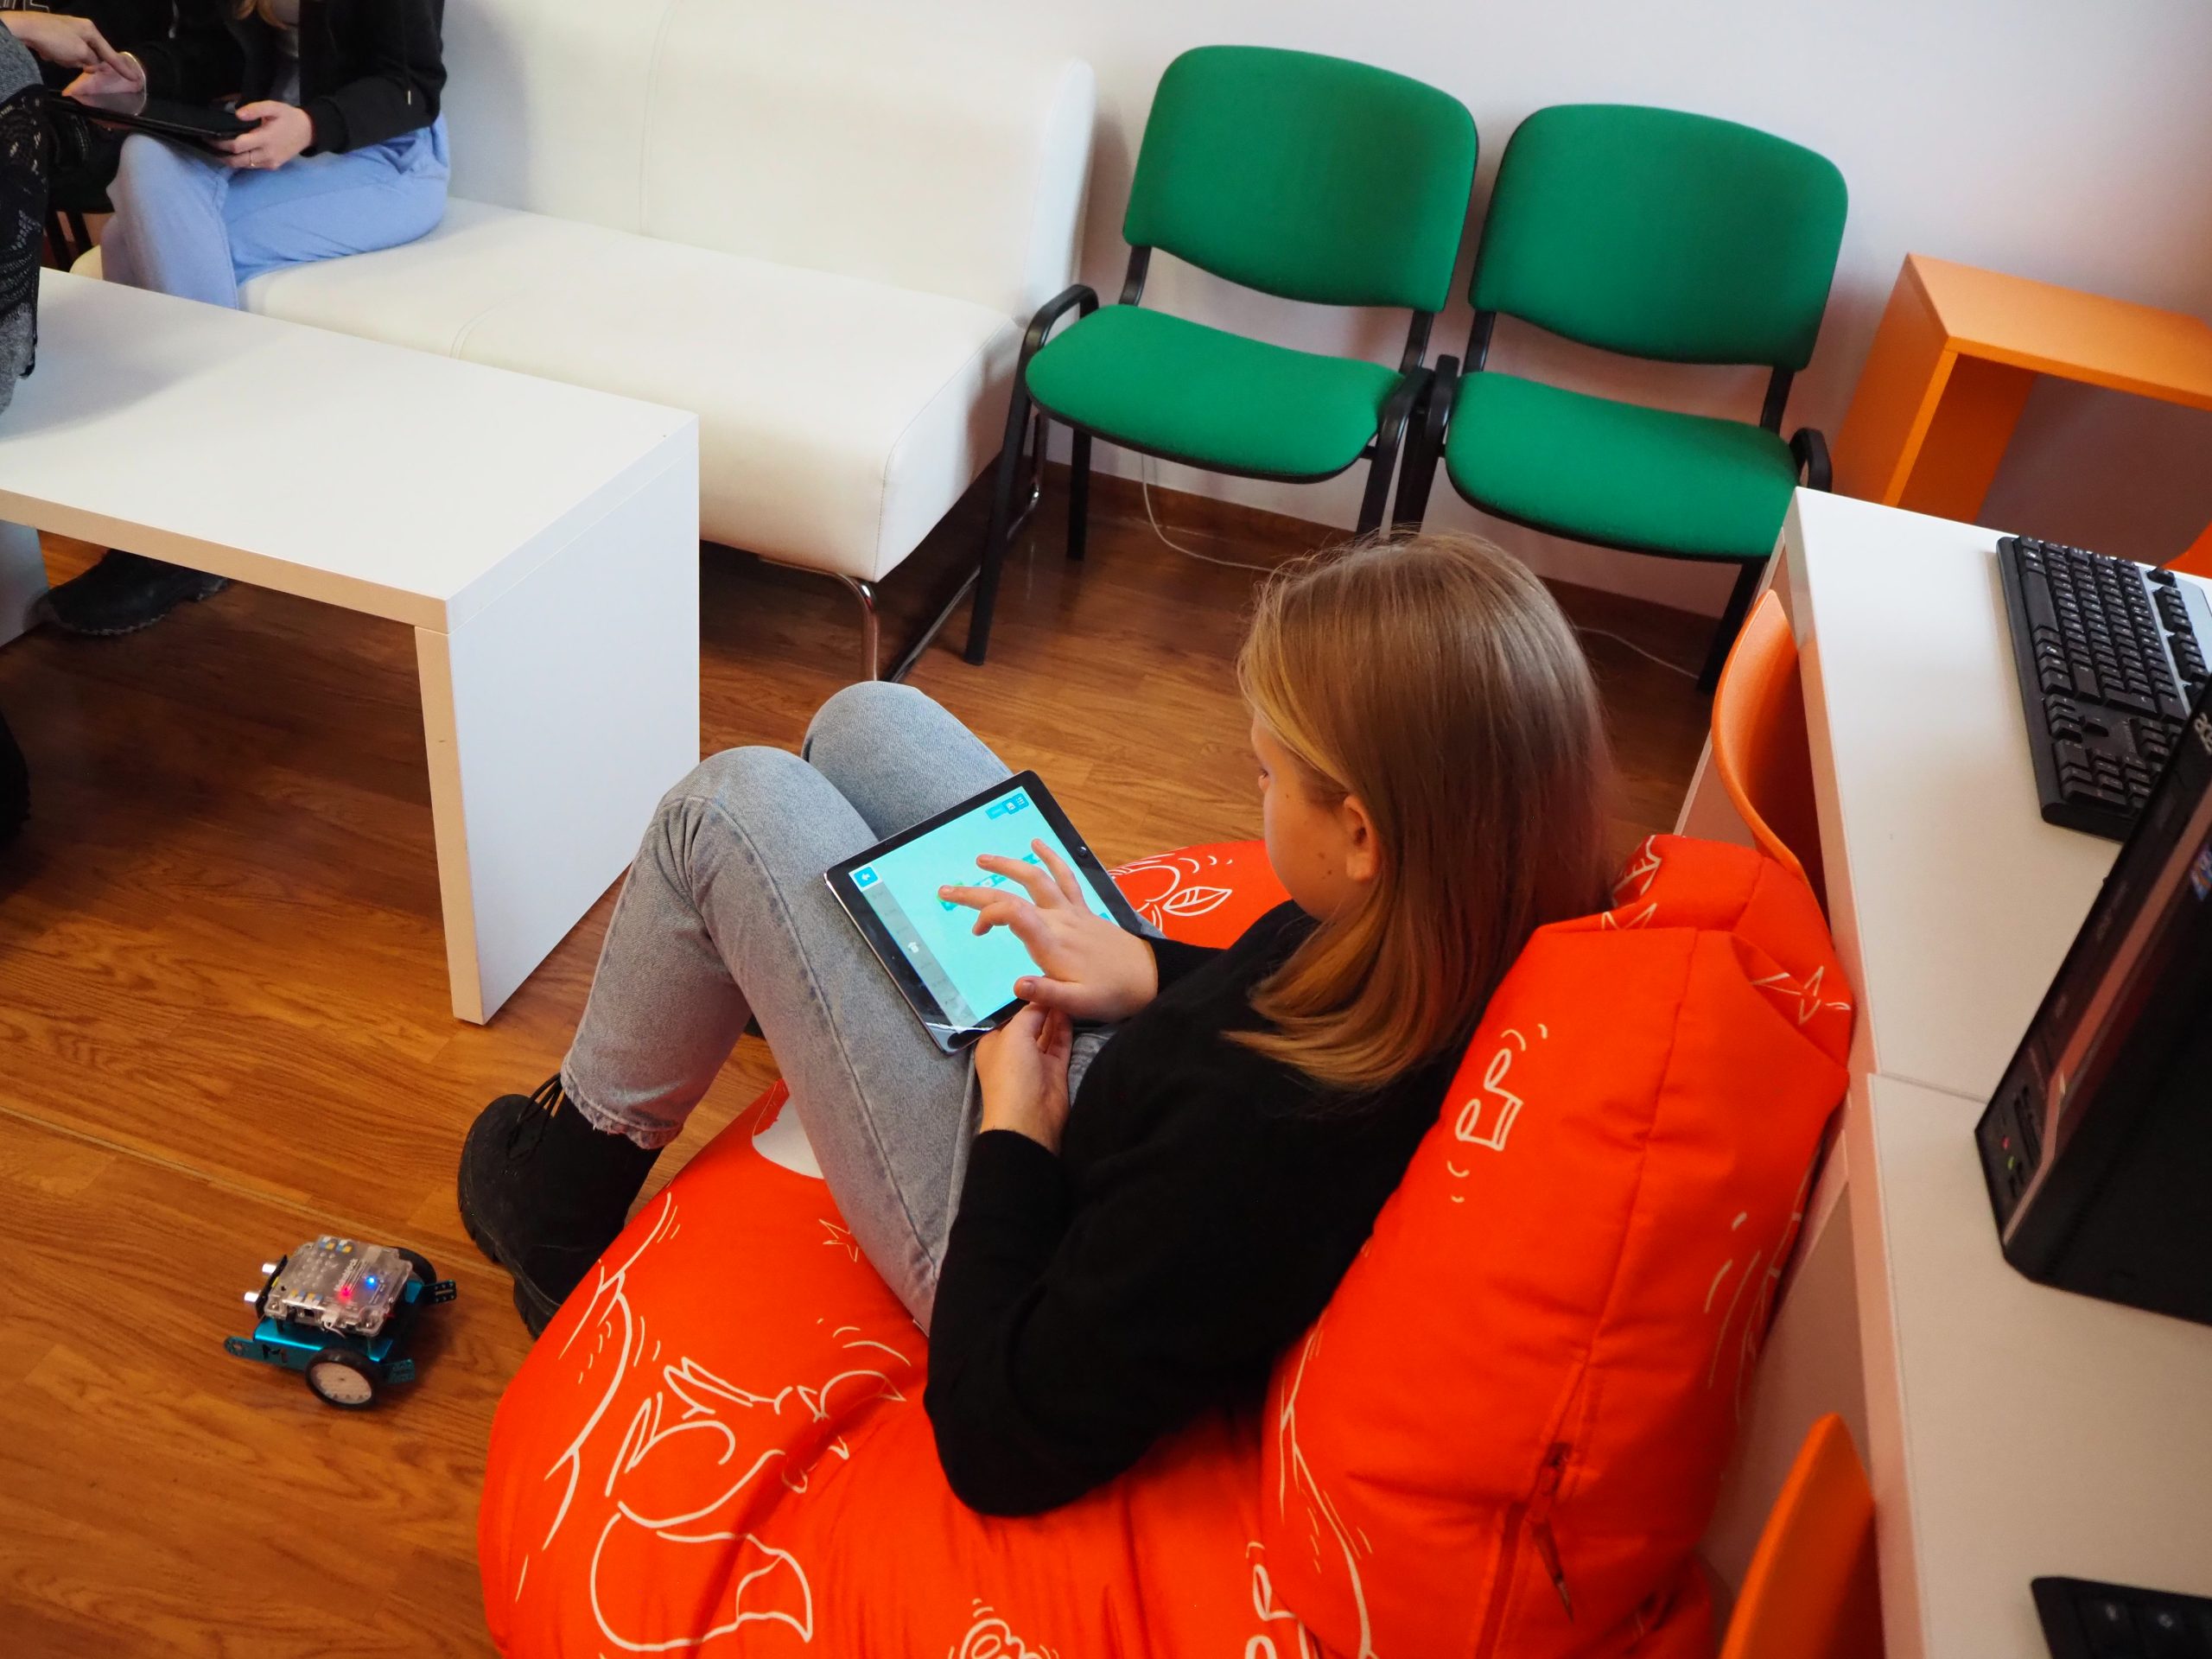 dziewczyna siedzi na pomarańczowej pufie i korzysta z tabletu